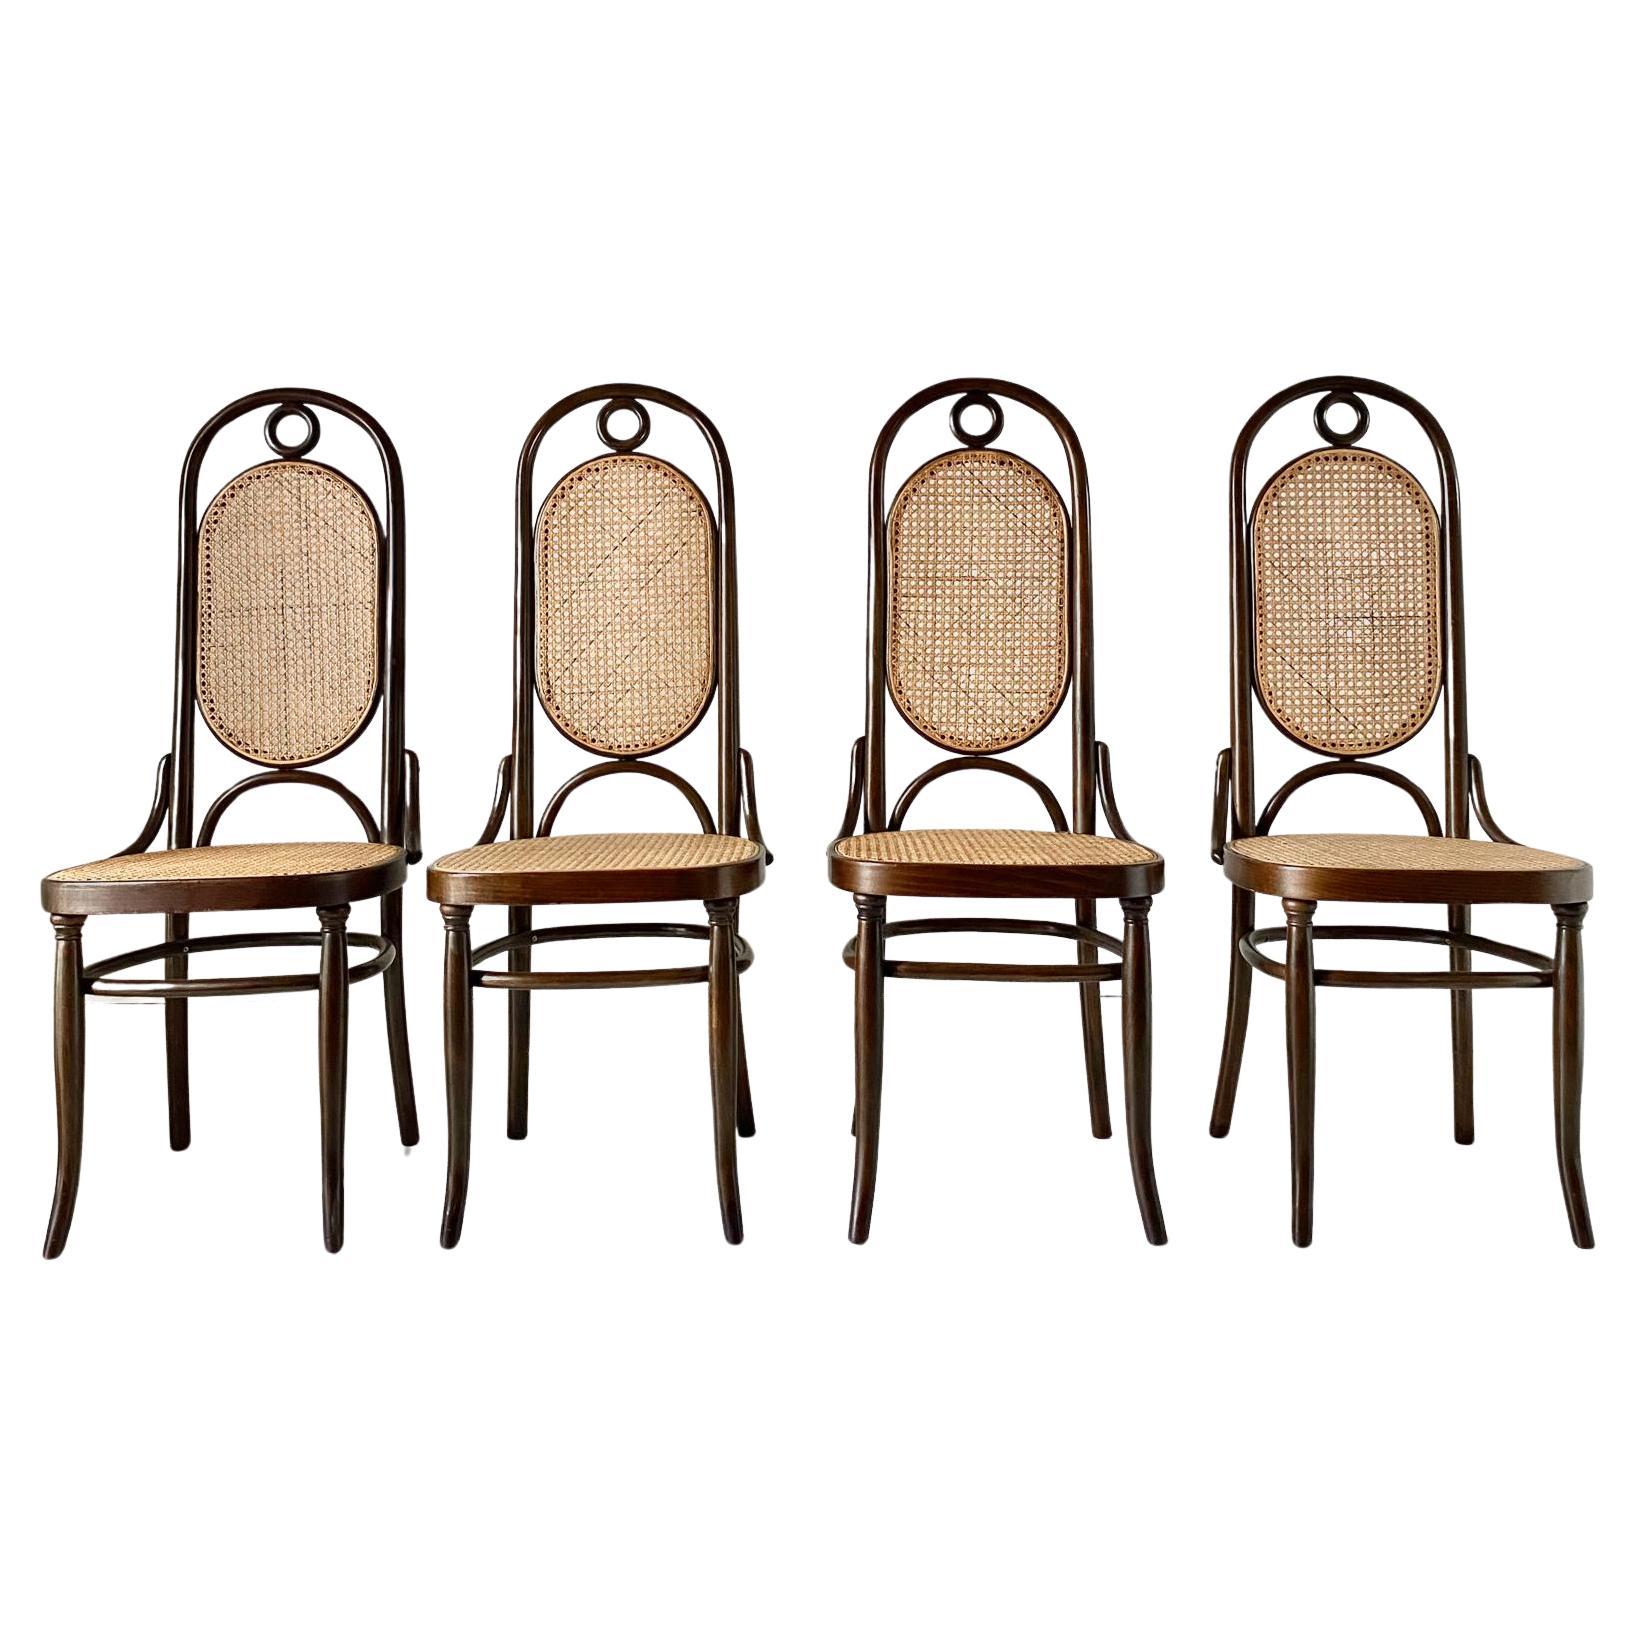 Set di quattro sedie in legno curvato di noce prodotte da Thonet. Modello 207 (anche conosciuto come 